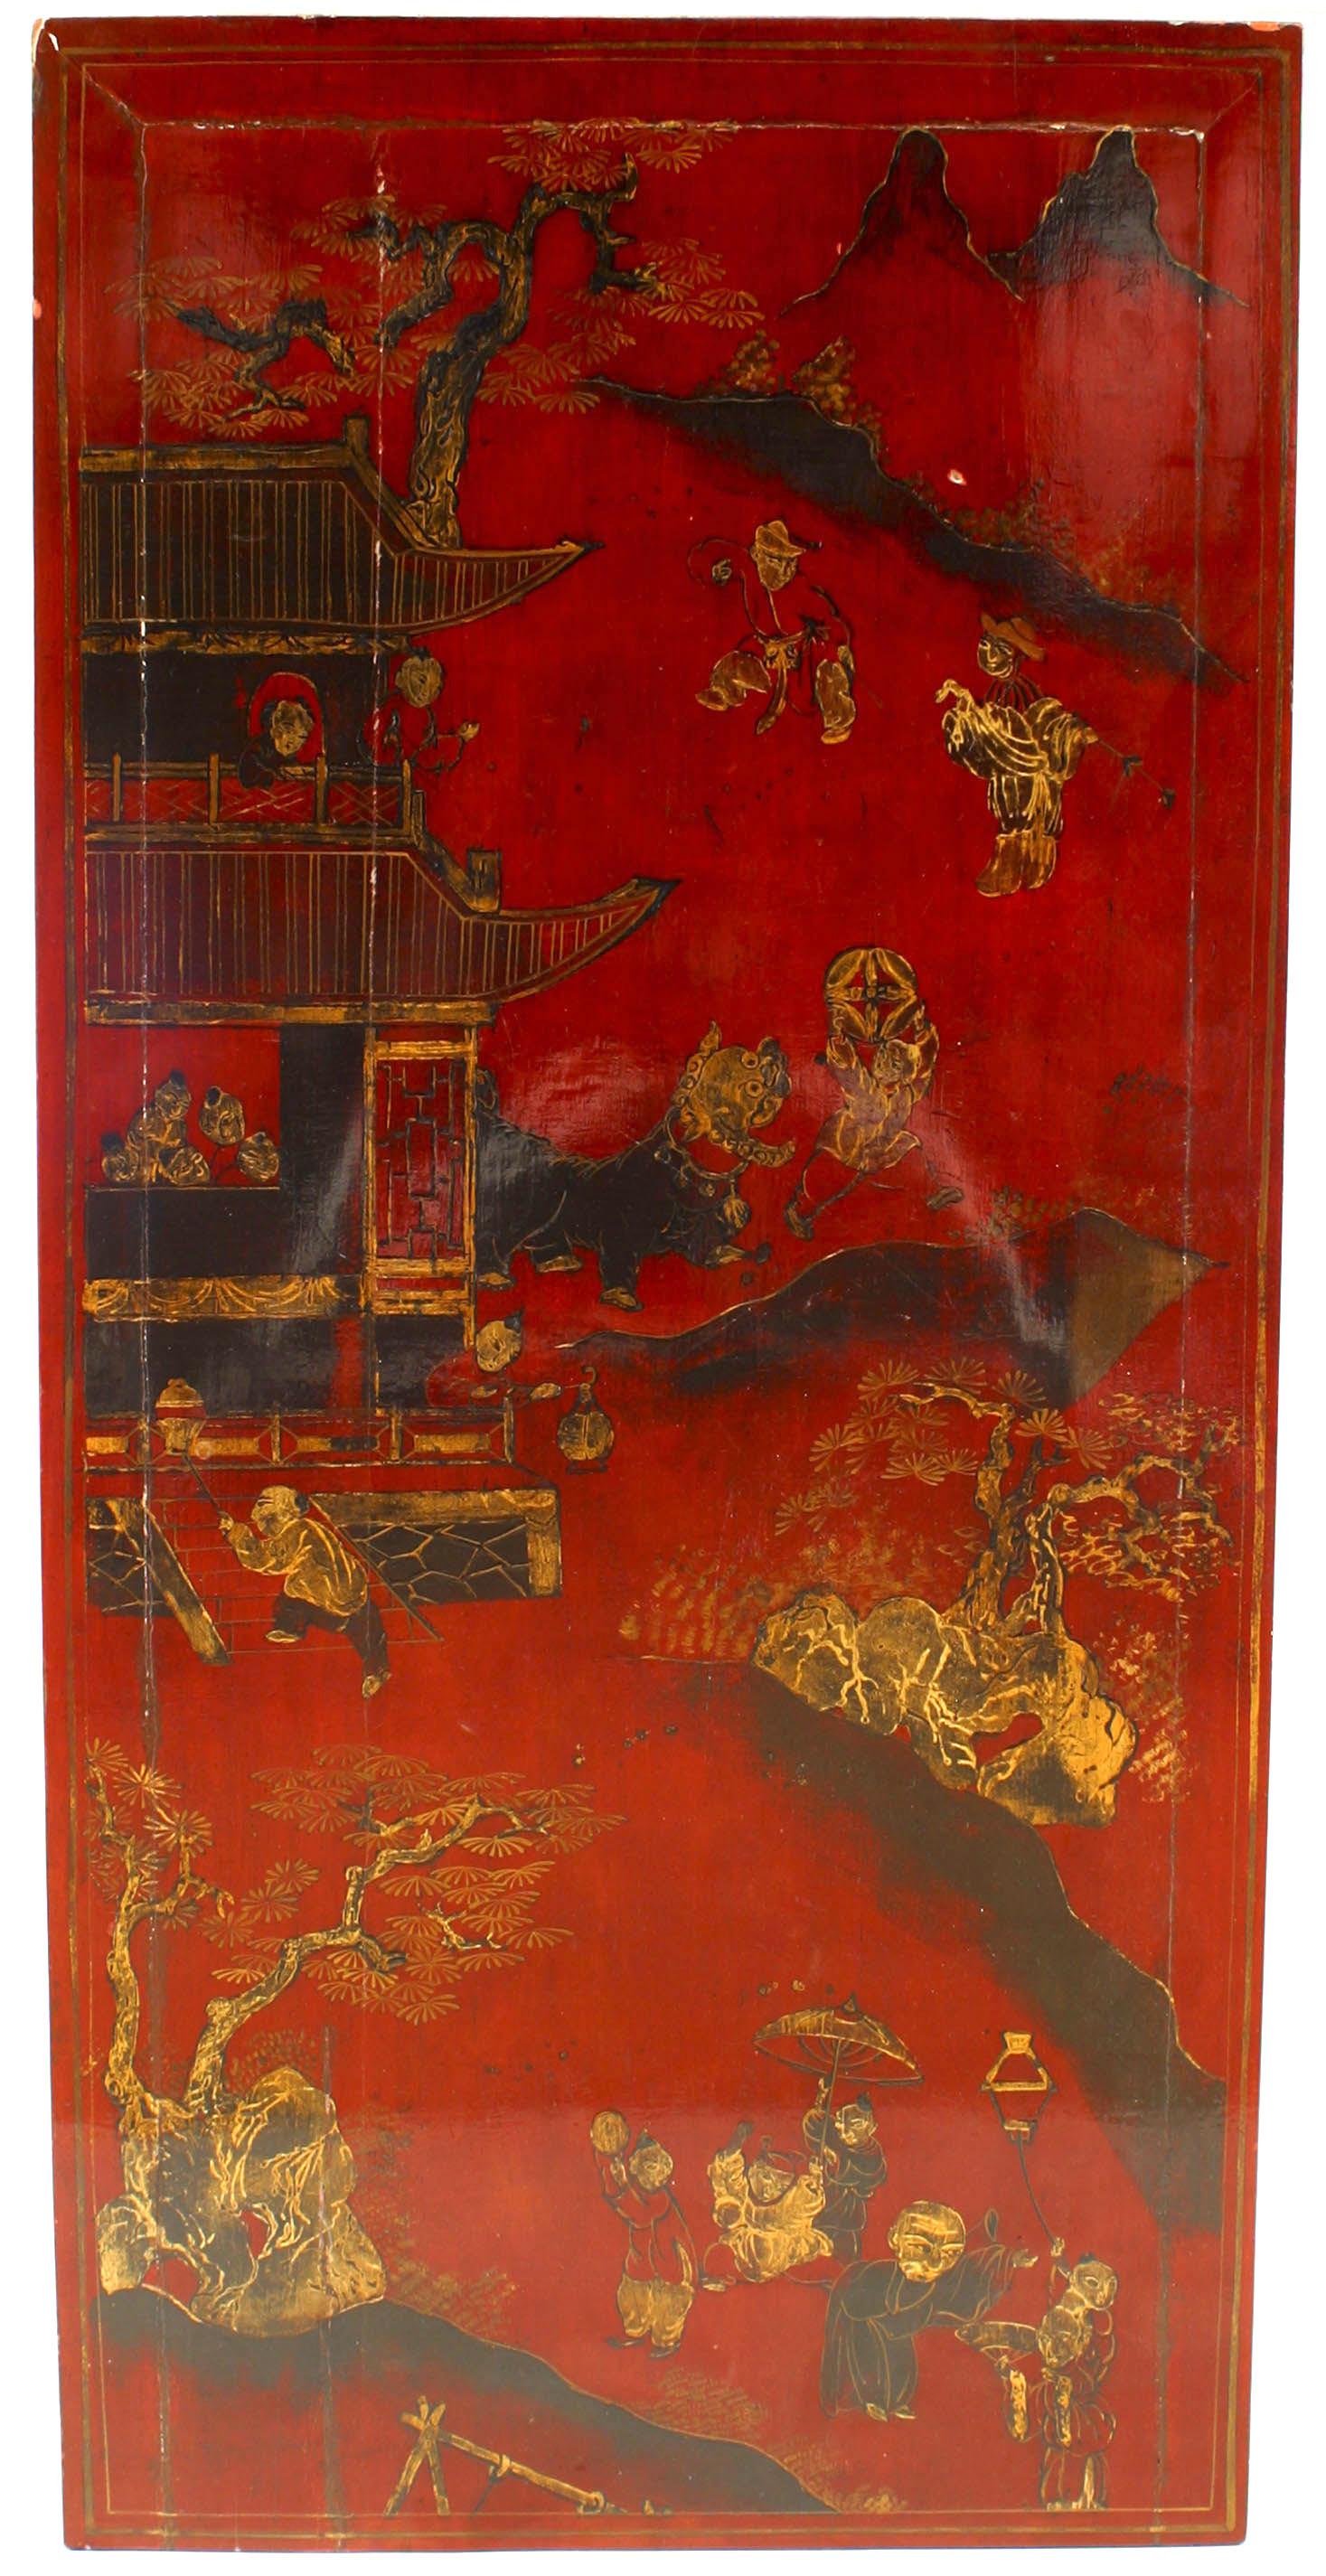 Asiatischer, rot lackierter, rechteckiger Couchtisch im chinesischen Stil mit einer Platte, die eine Szene mit Figuren und floralen Motiven zeigt und auf kabrioletten Beinen ruht.
